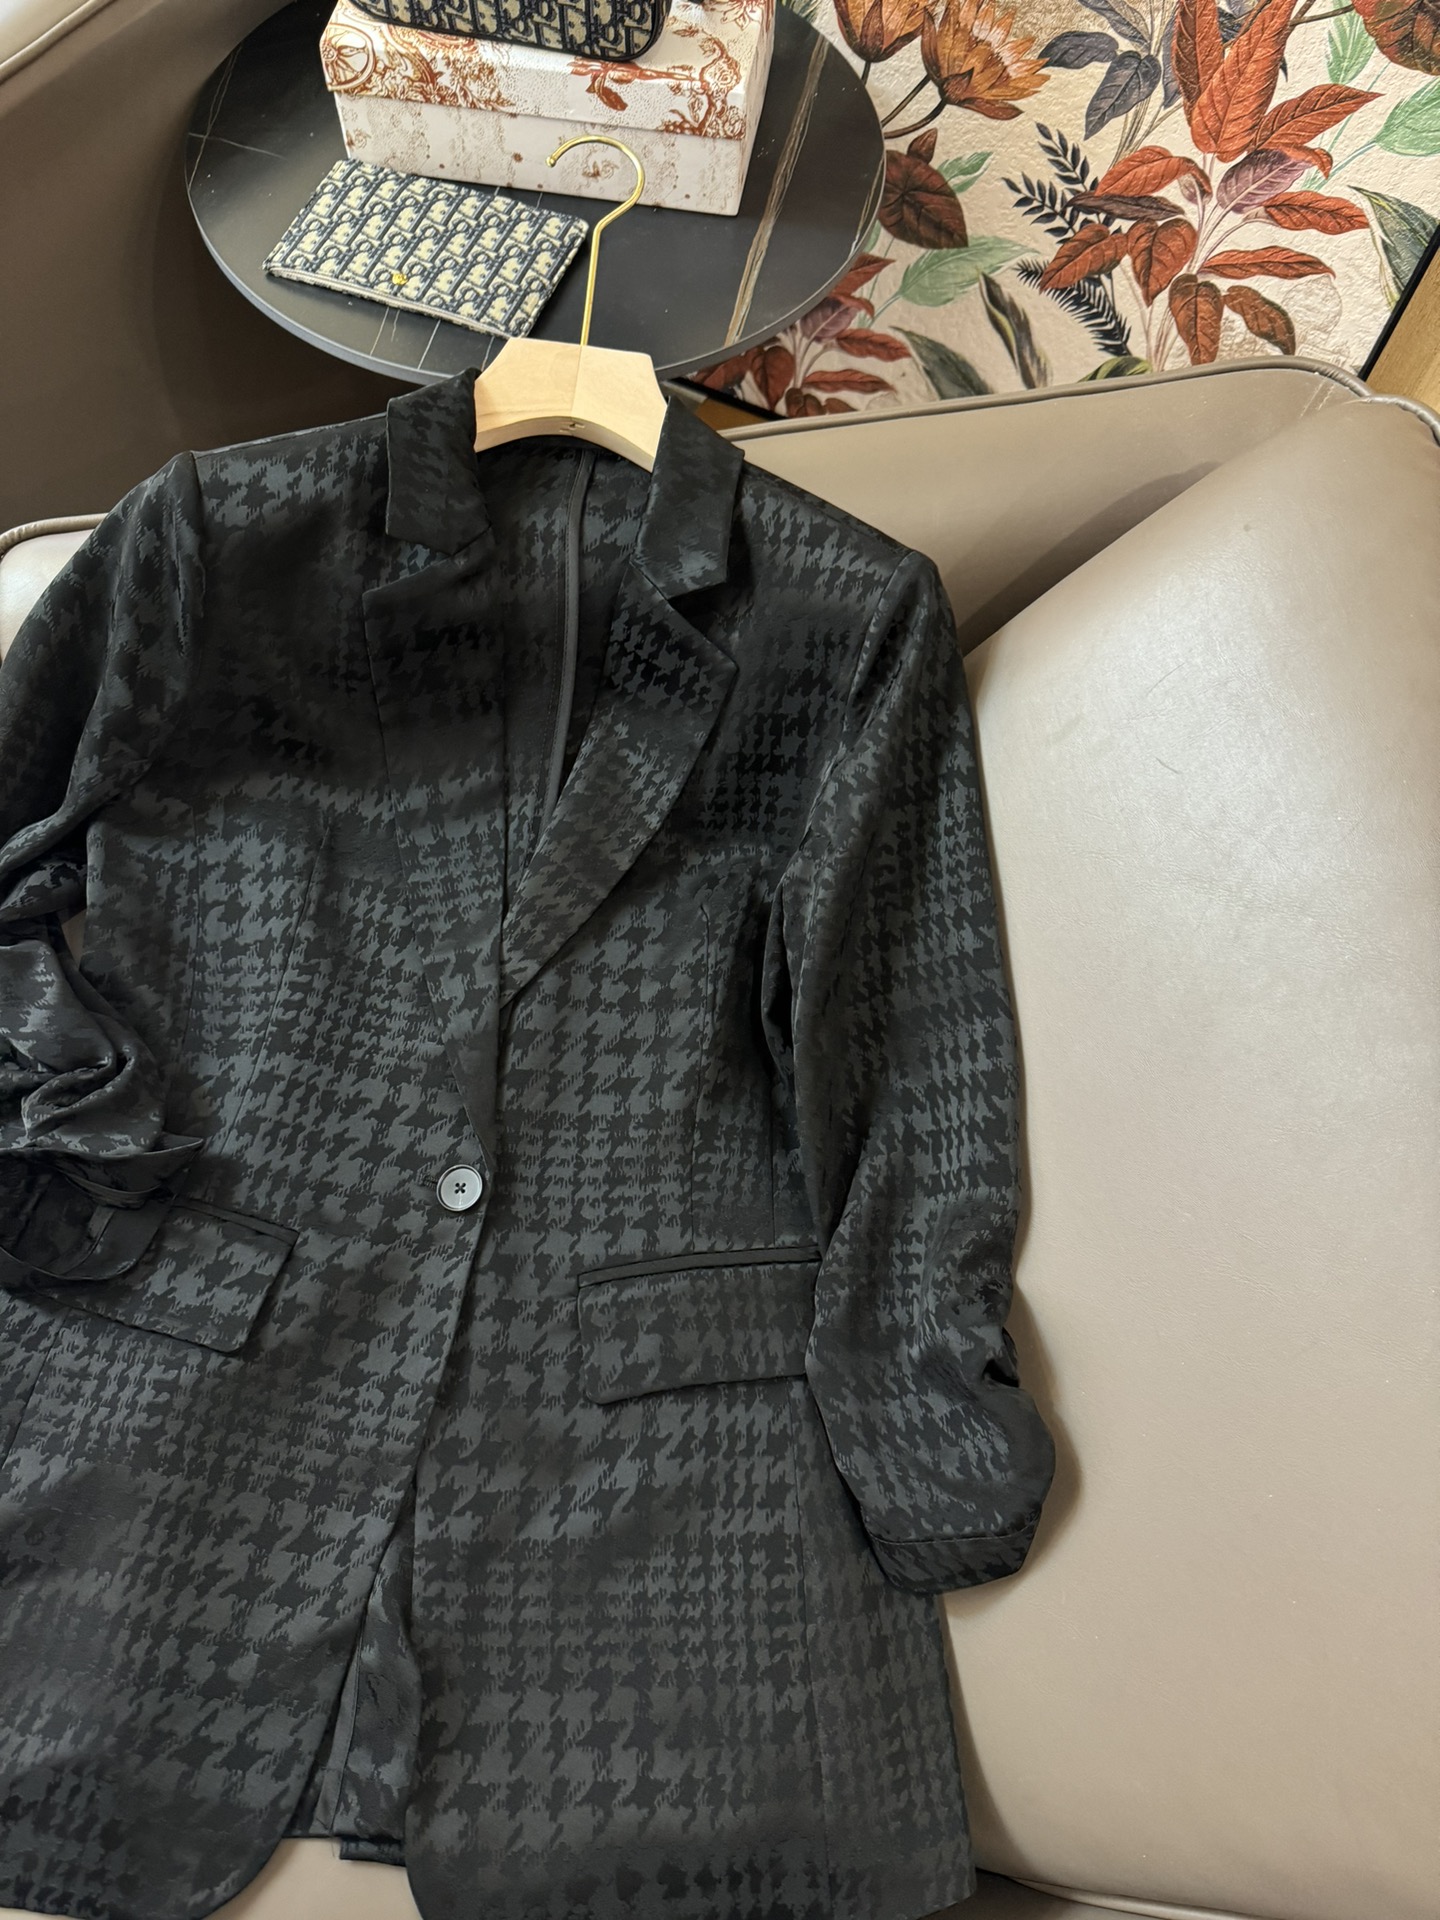 JF015#新款西装外套原创设计千鸟格提花醋酸面料九分袖西装外套黑色白色SMLXL